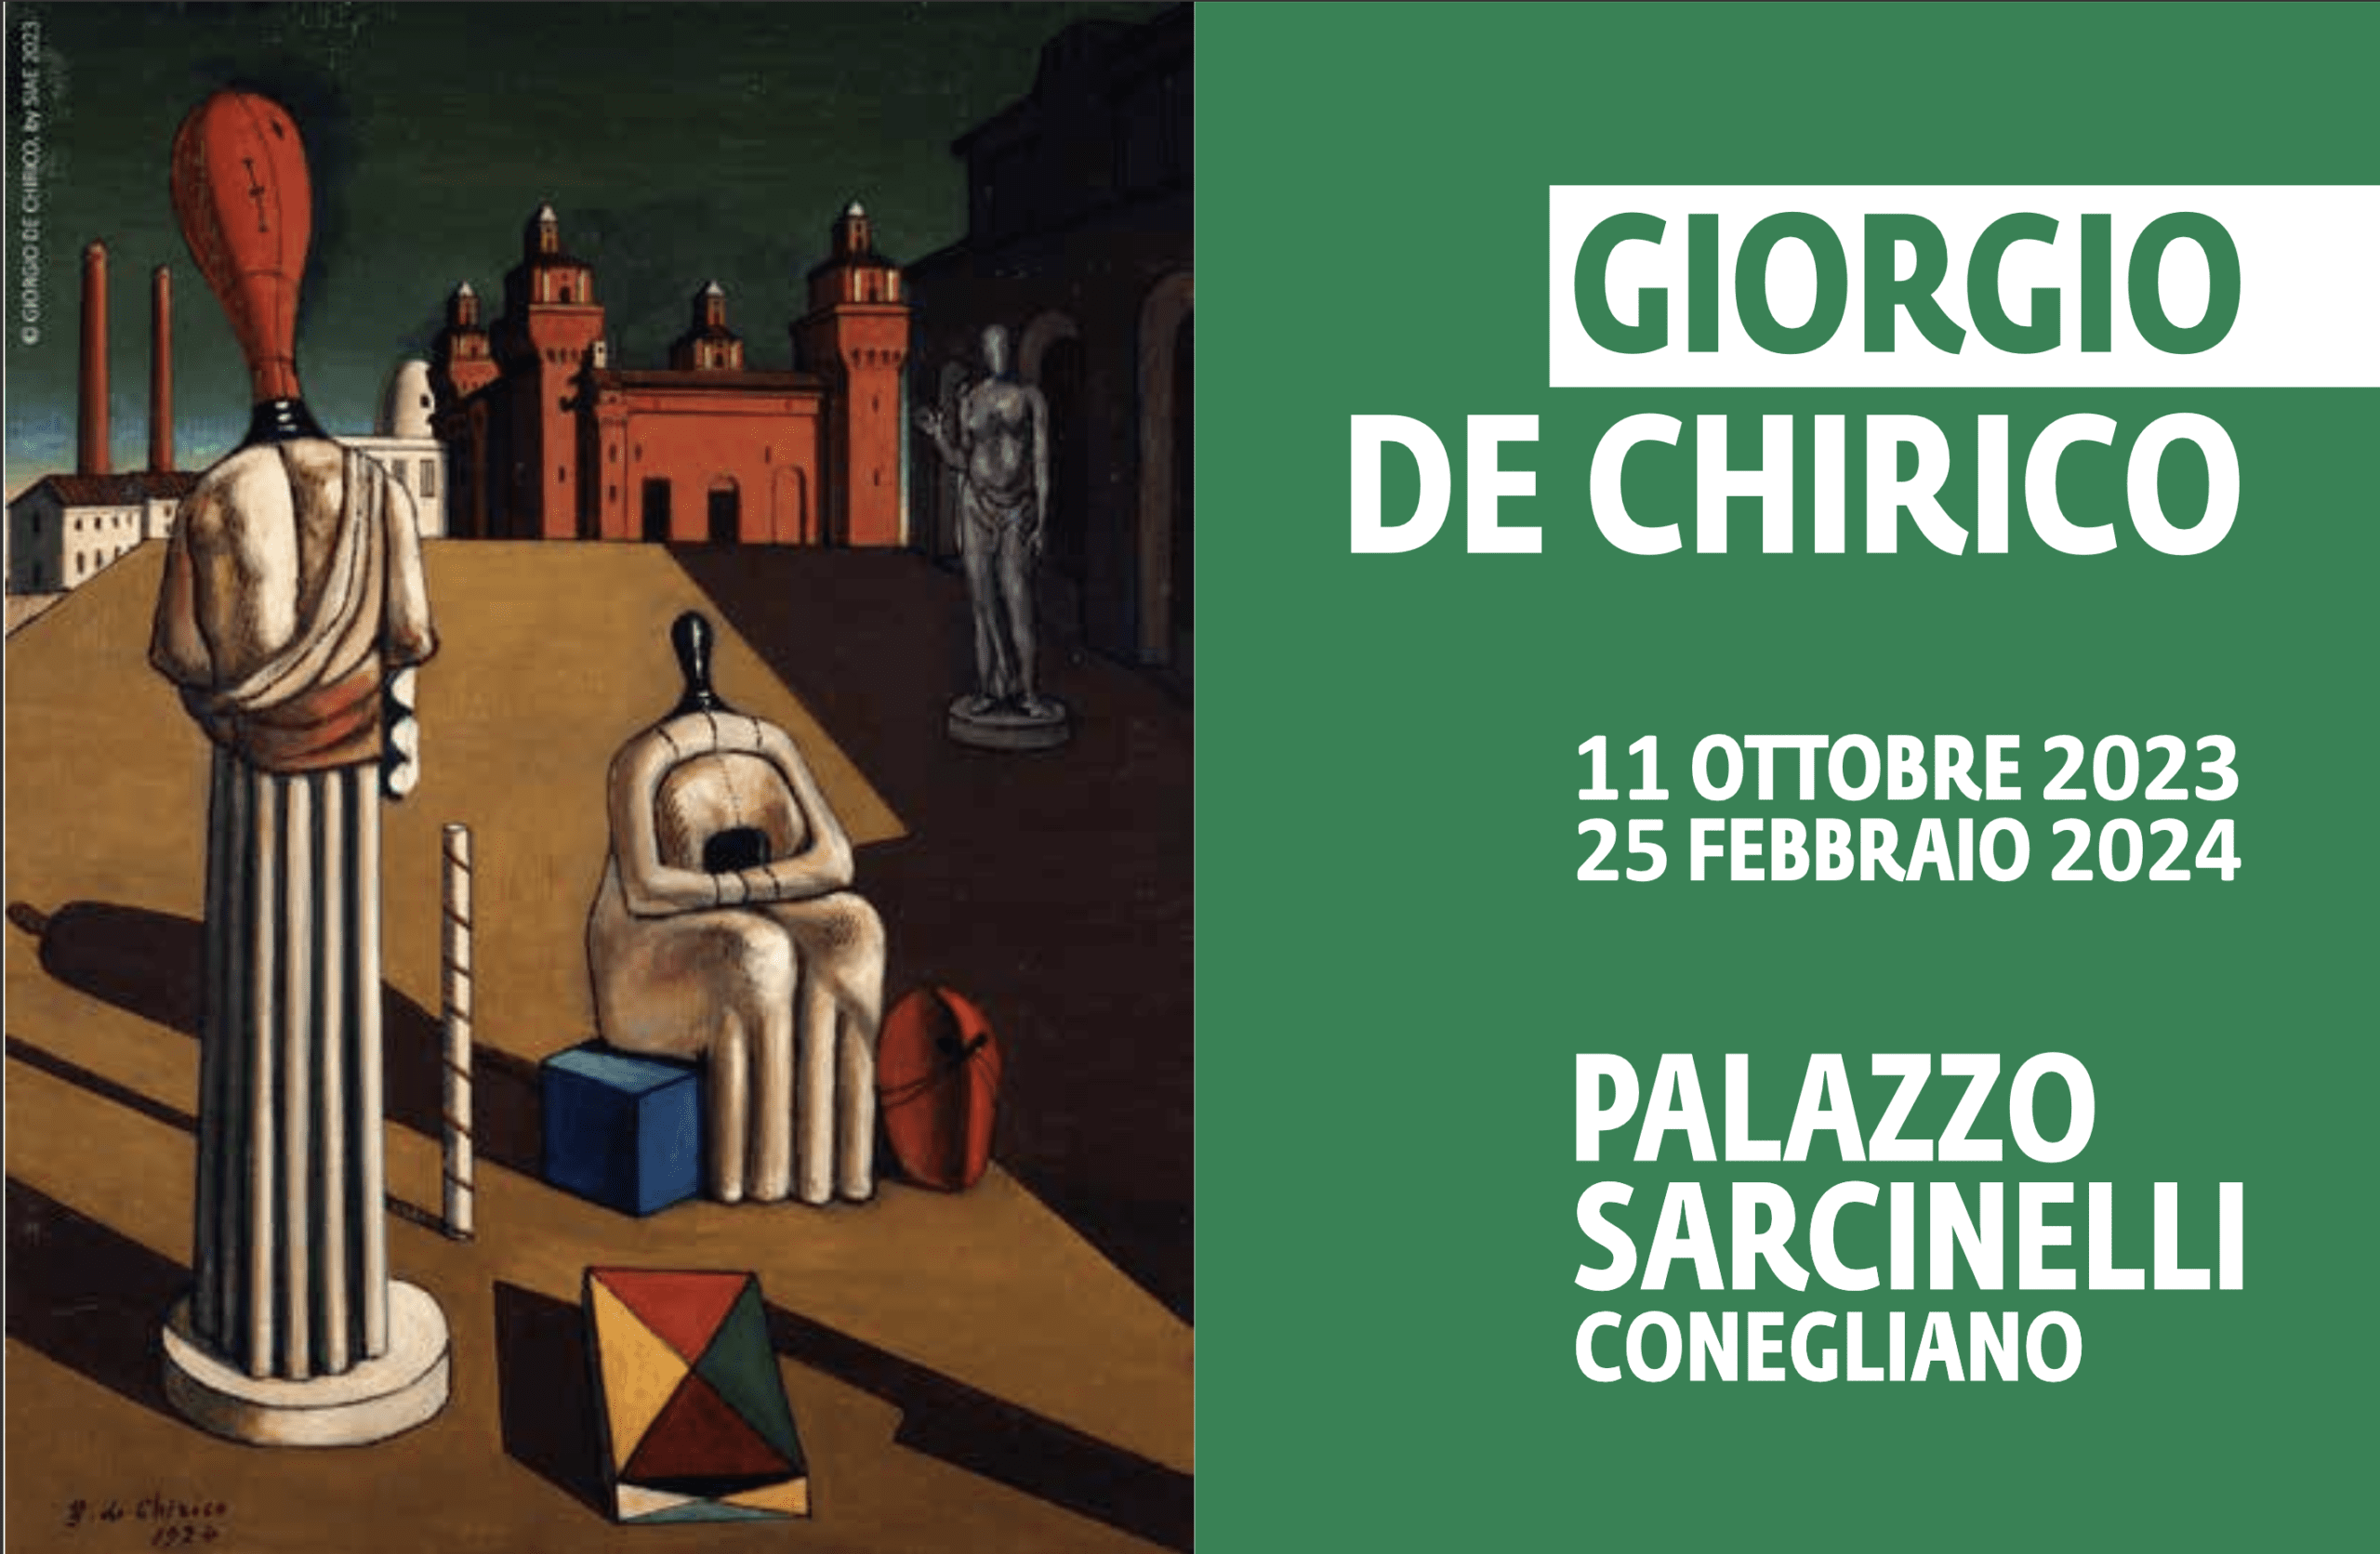 DE CHIRICO Metafisica continua - CONEGLIANO (TV) – Palazzo Sarcinelli - 11 ottobre 2023 - 25 febbraio 2024 - centenario del Surrealismo